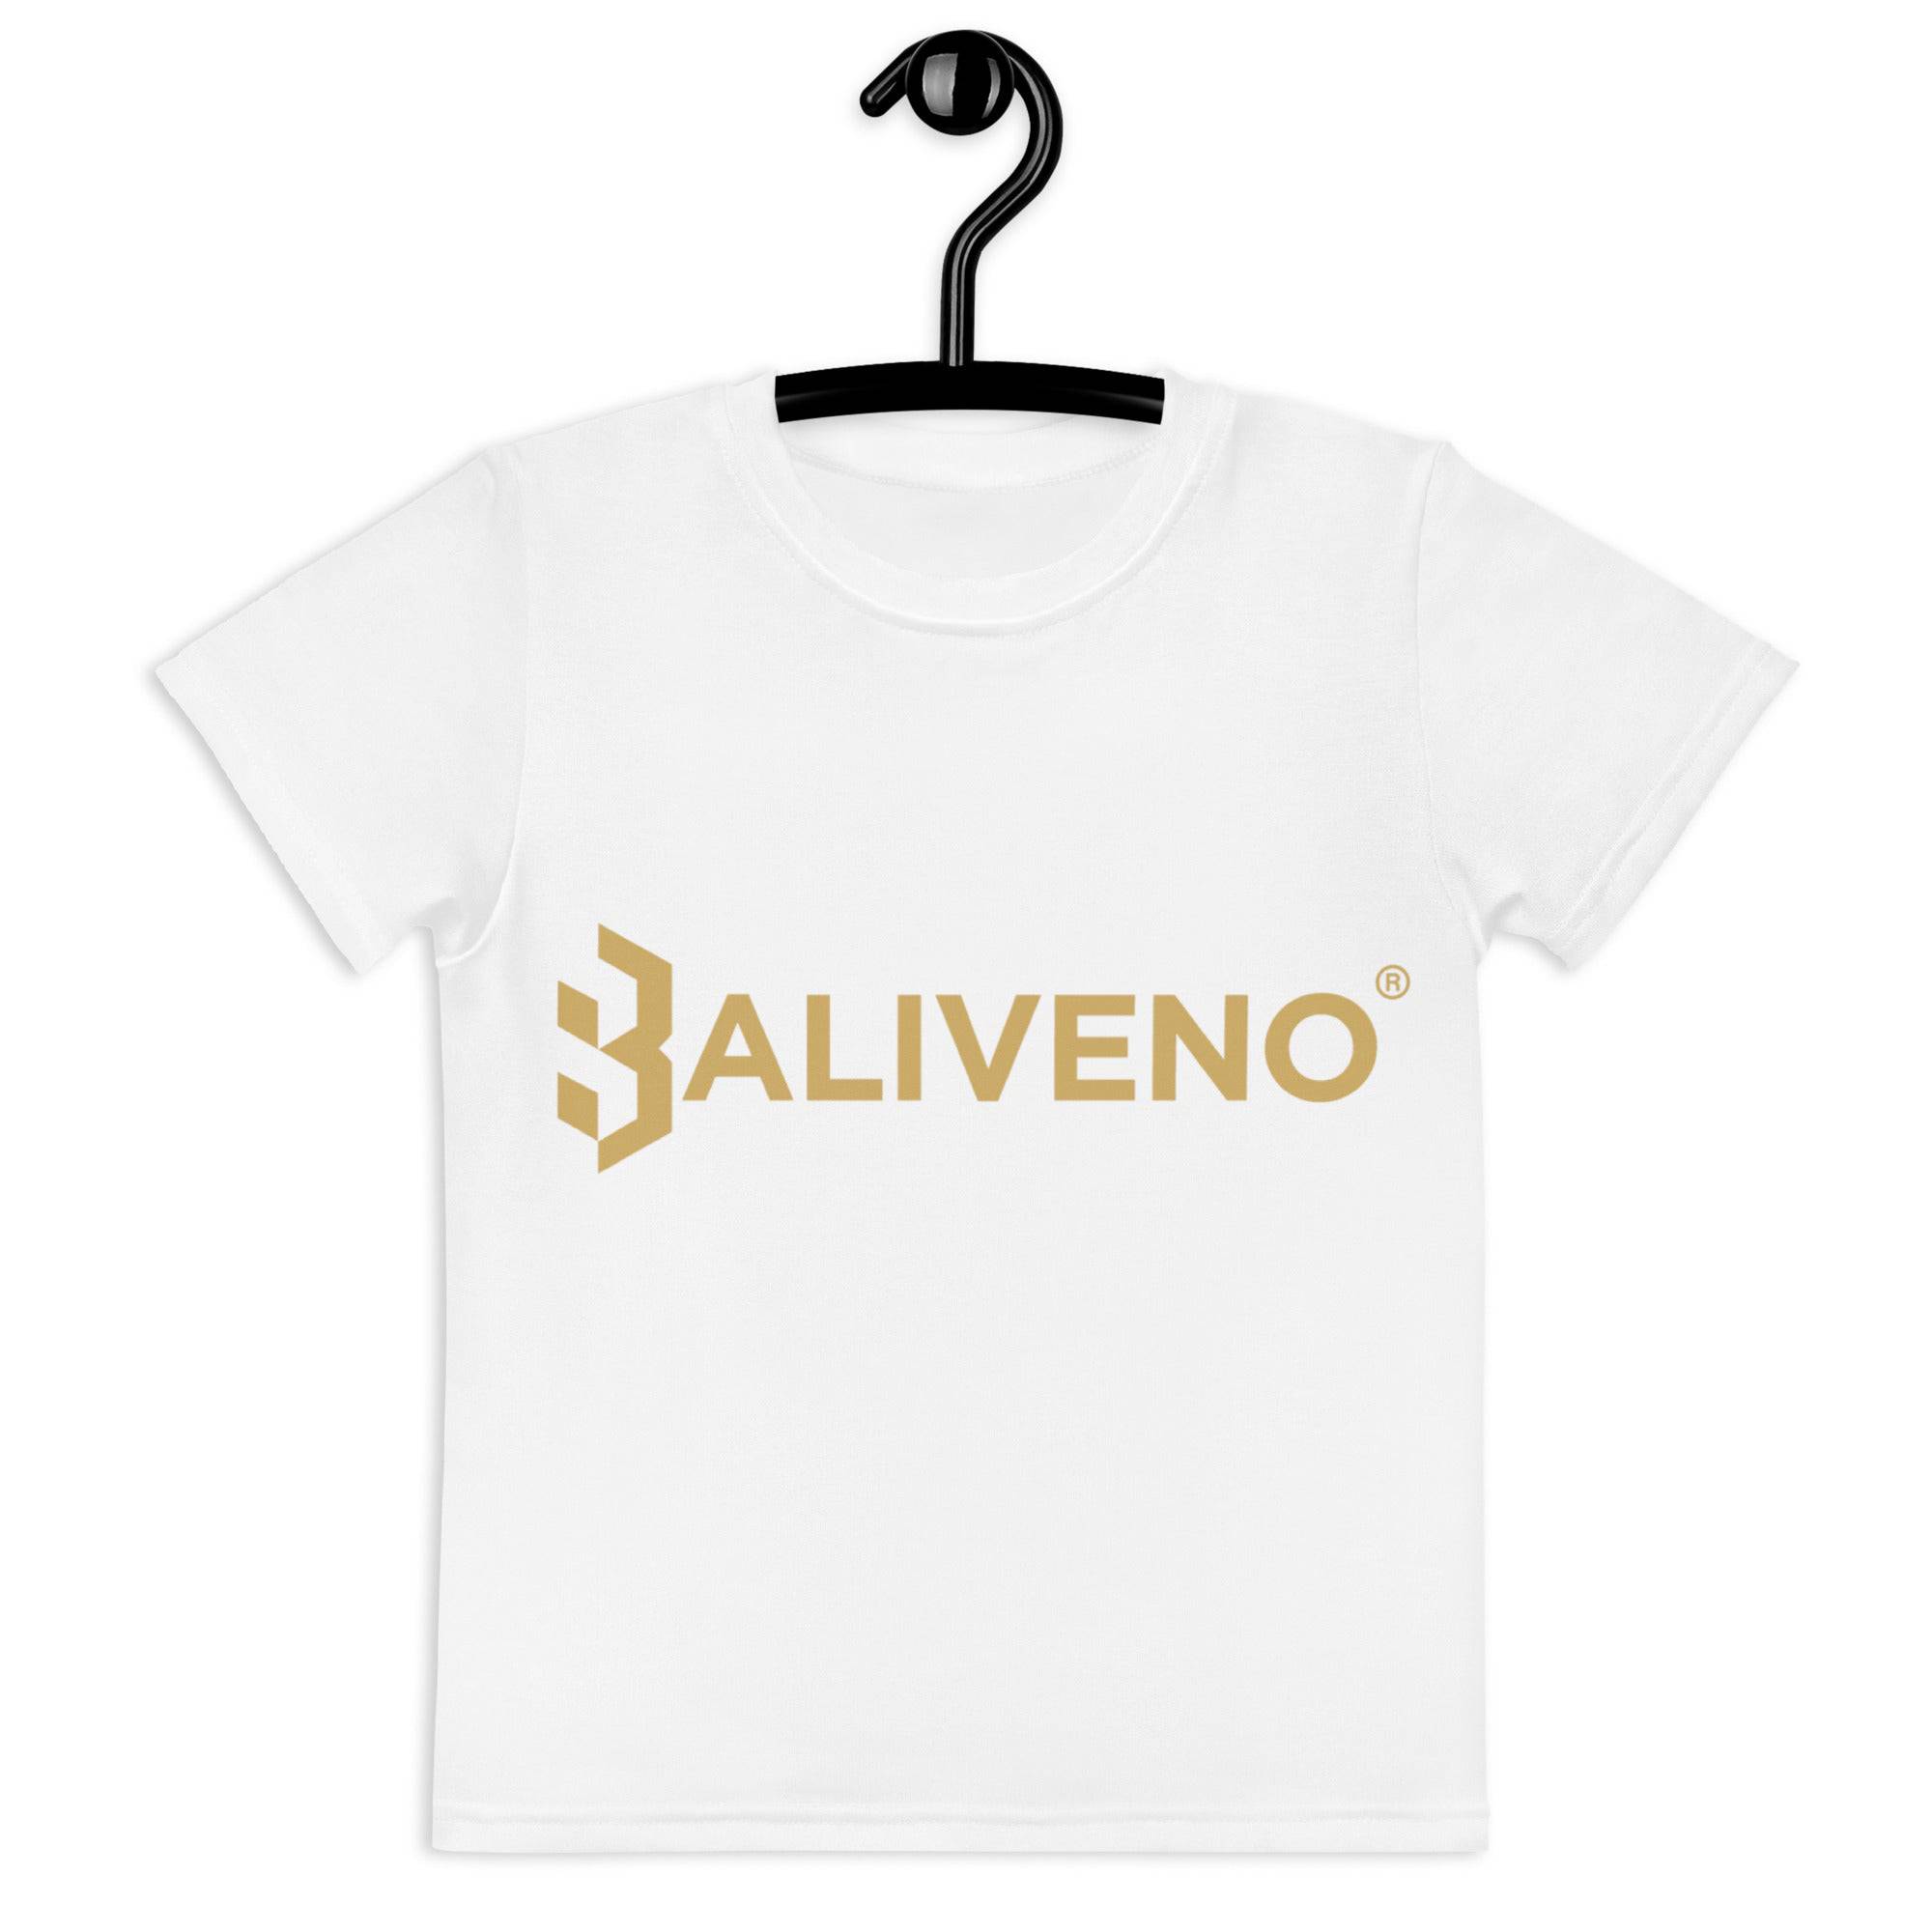 Kids crew neck t-shirt - BALIVENO